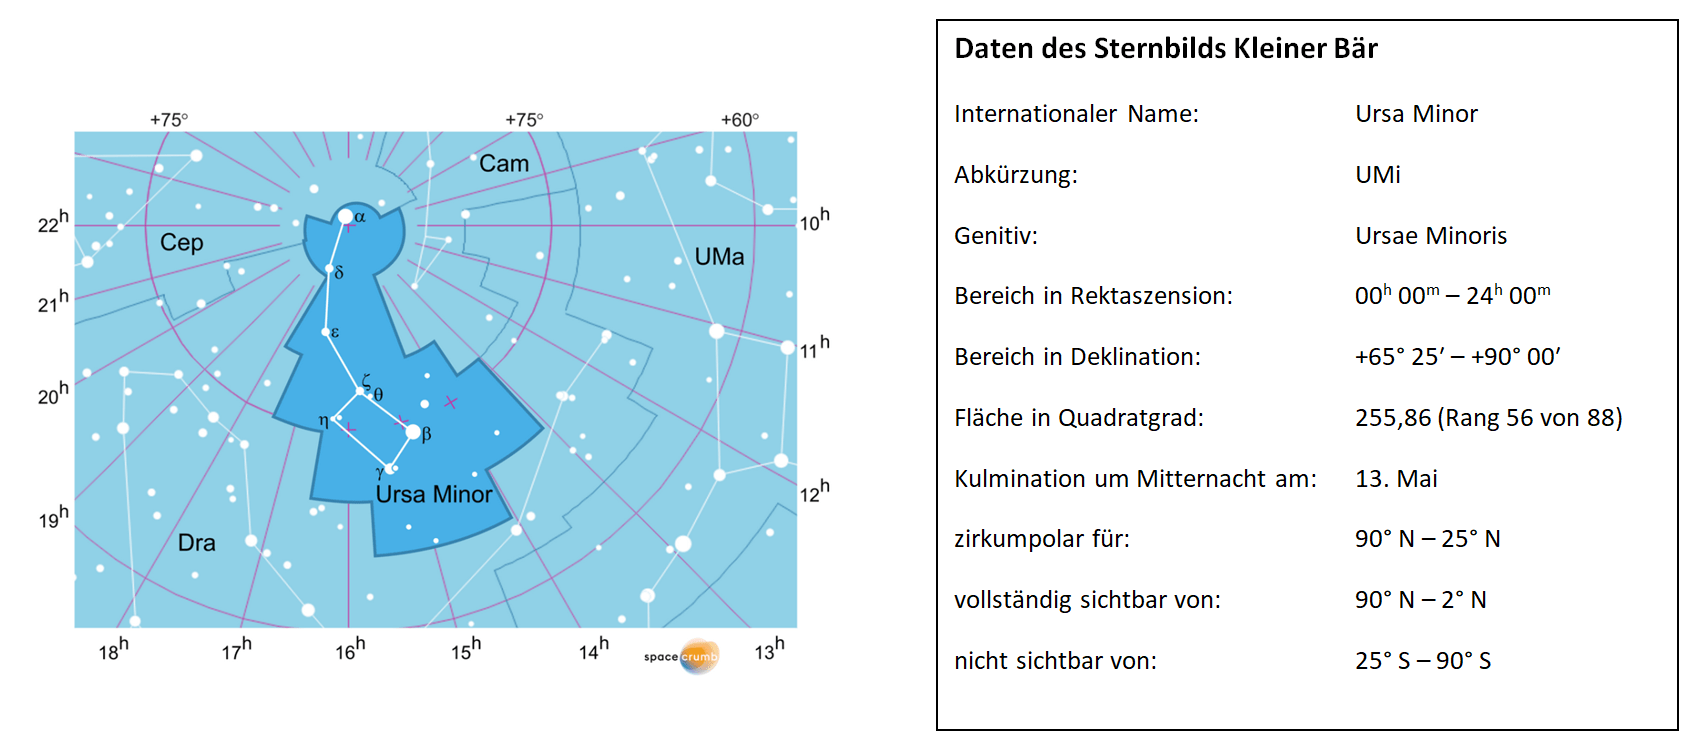 Daten des Sternbilds Kleiner Baer